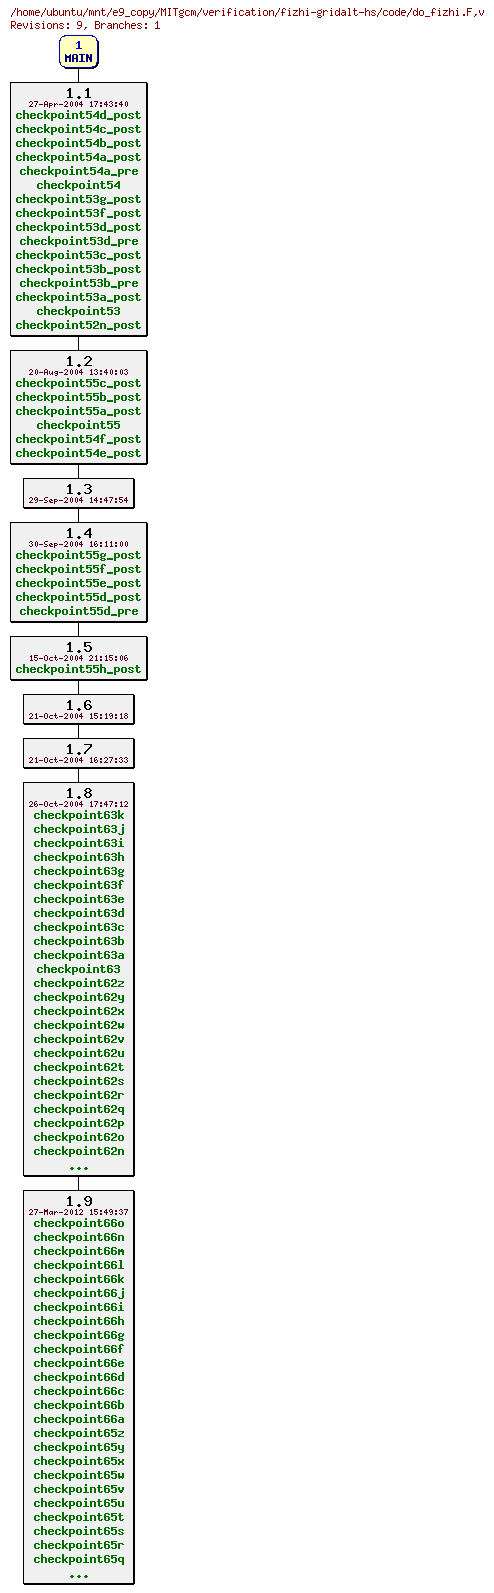 Revisions of MITgcm/verification/fizhi-gridalt-hs/code/do_fizhi.F